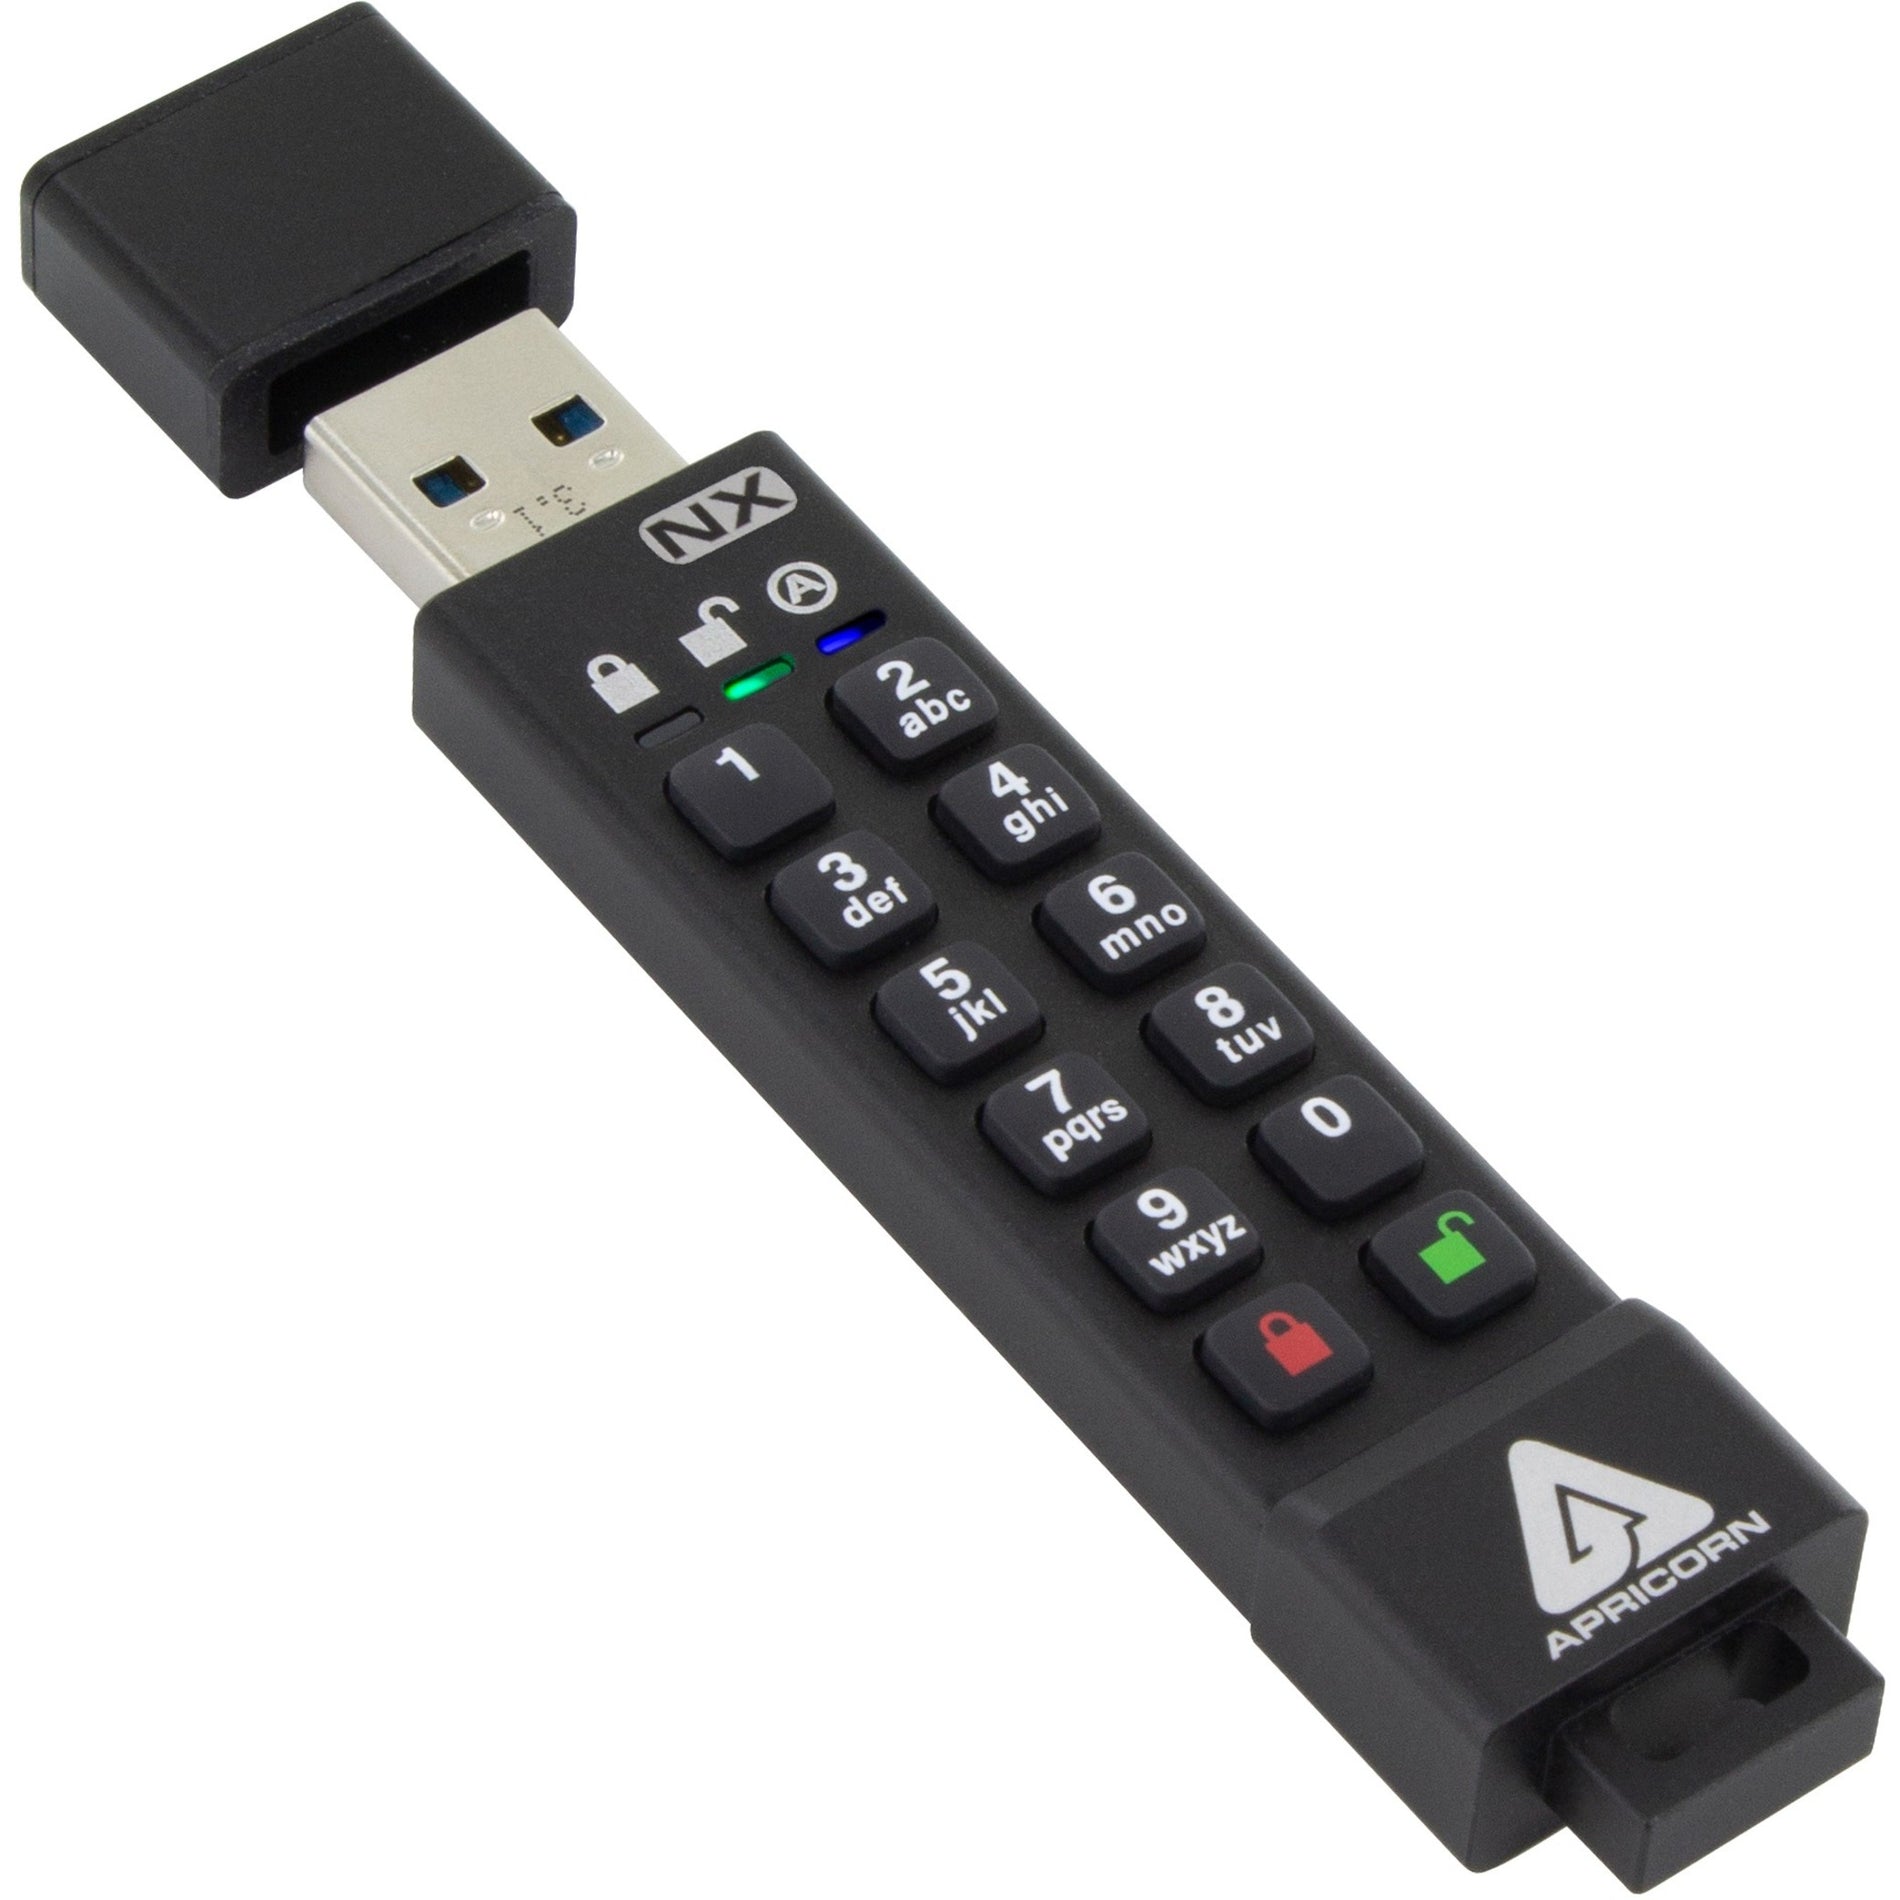 Apricorn ASK3-NX-64GB Aegis Secure Key 3NX USB 3.0 Flash Drive, 64GB Storage, 256-bit AES Encryption